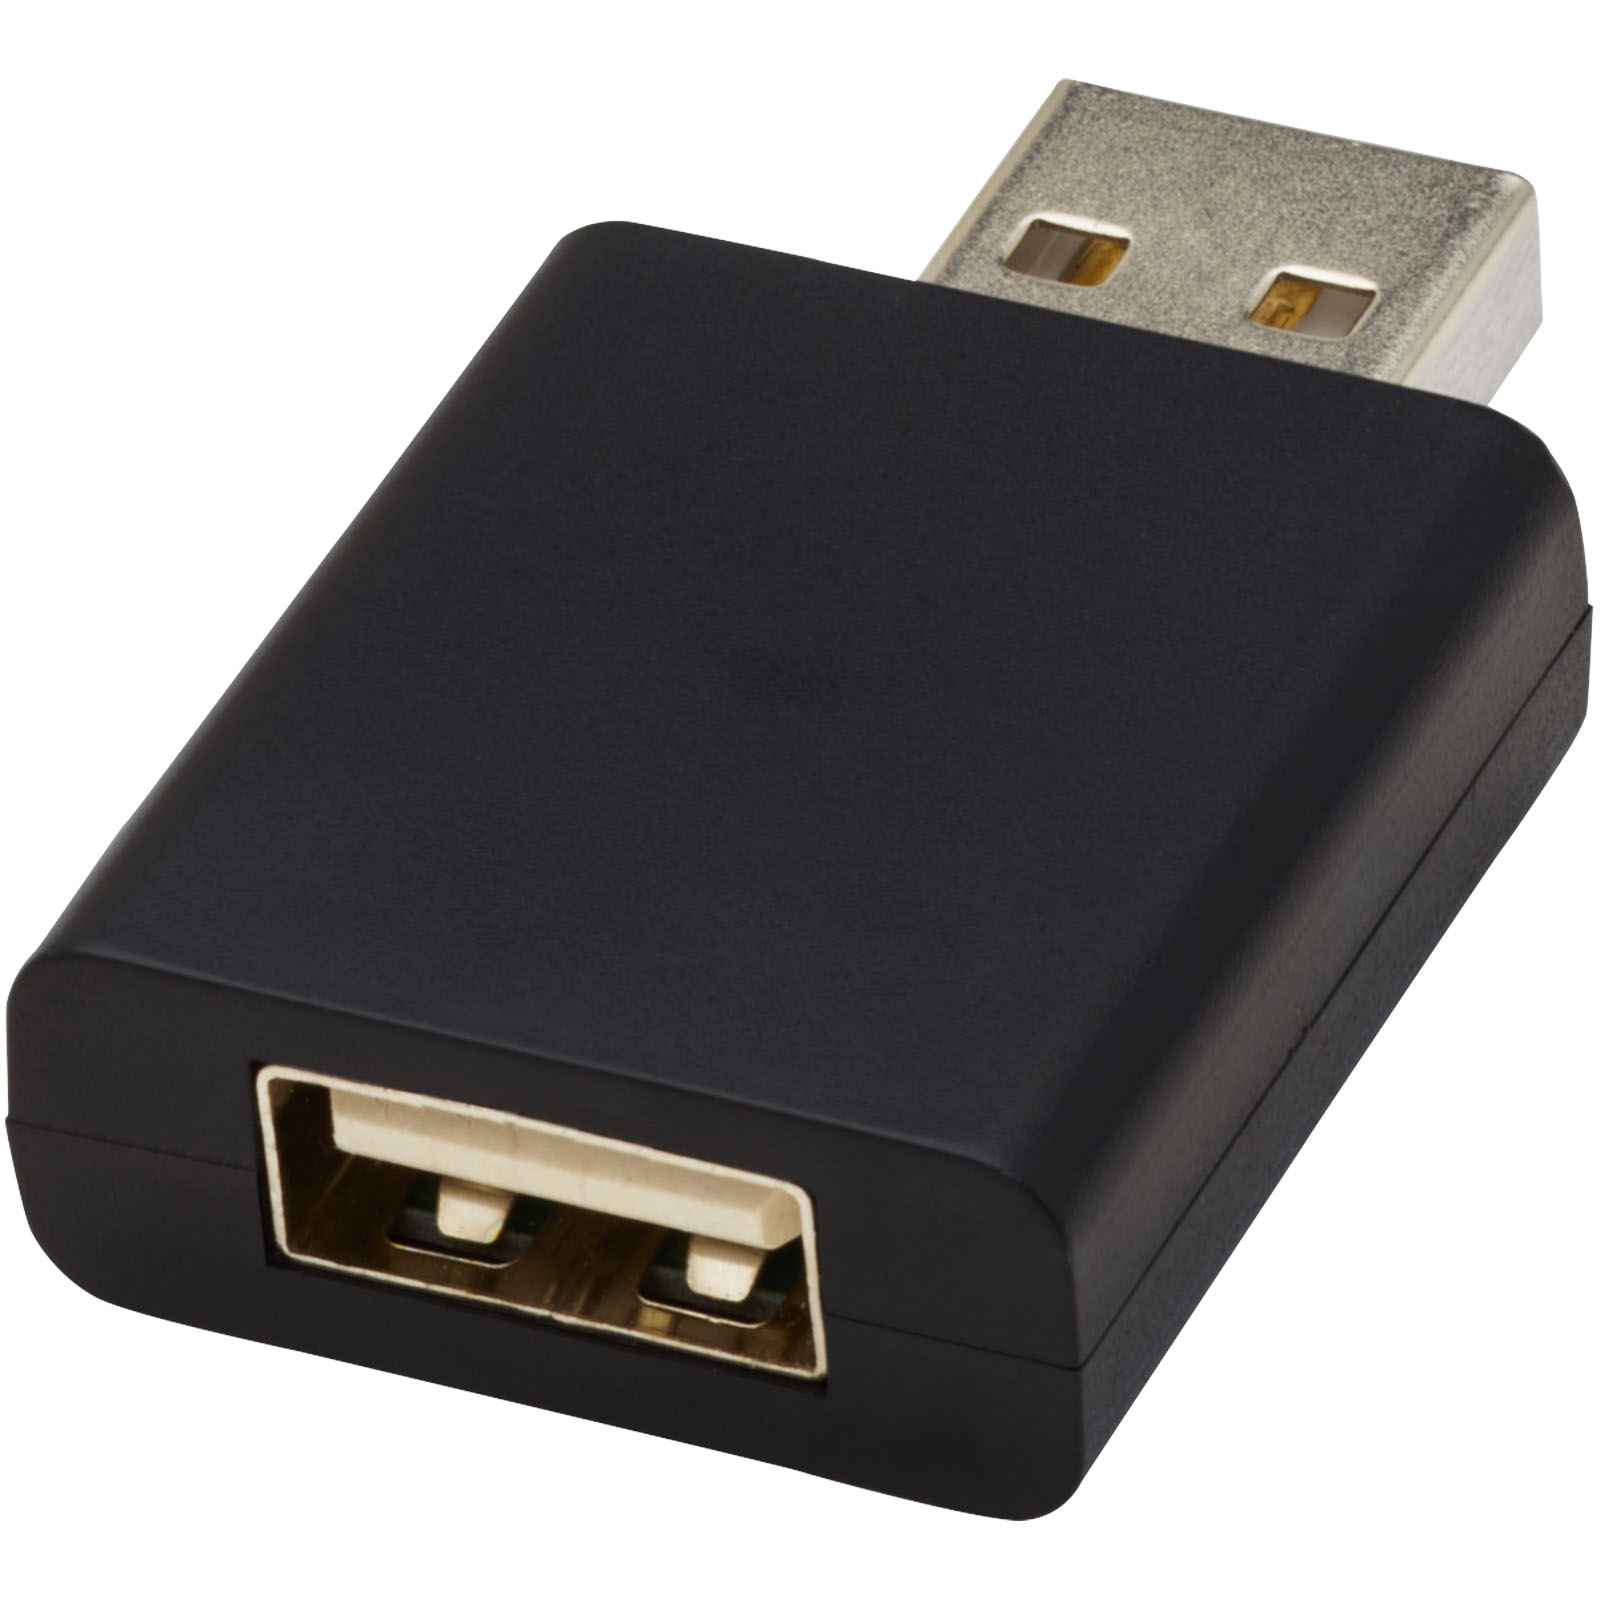 Accessoires pour ordinateur publicitaires - Bloqueur de données USB Incognito - 3